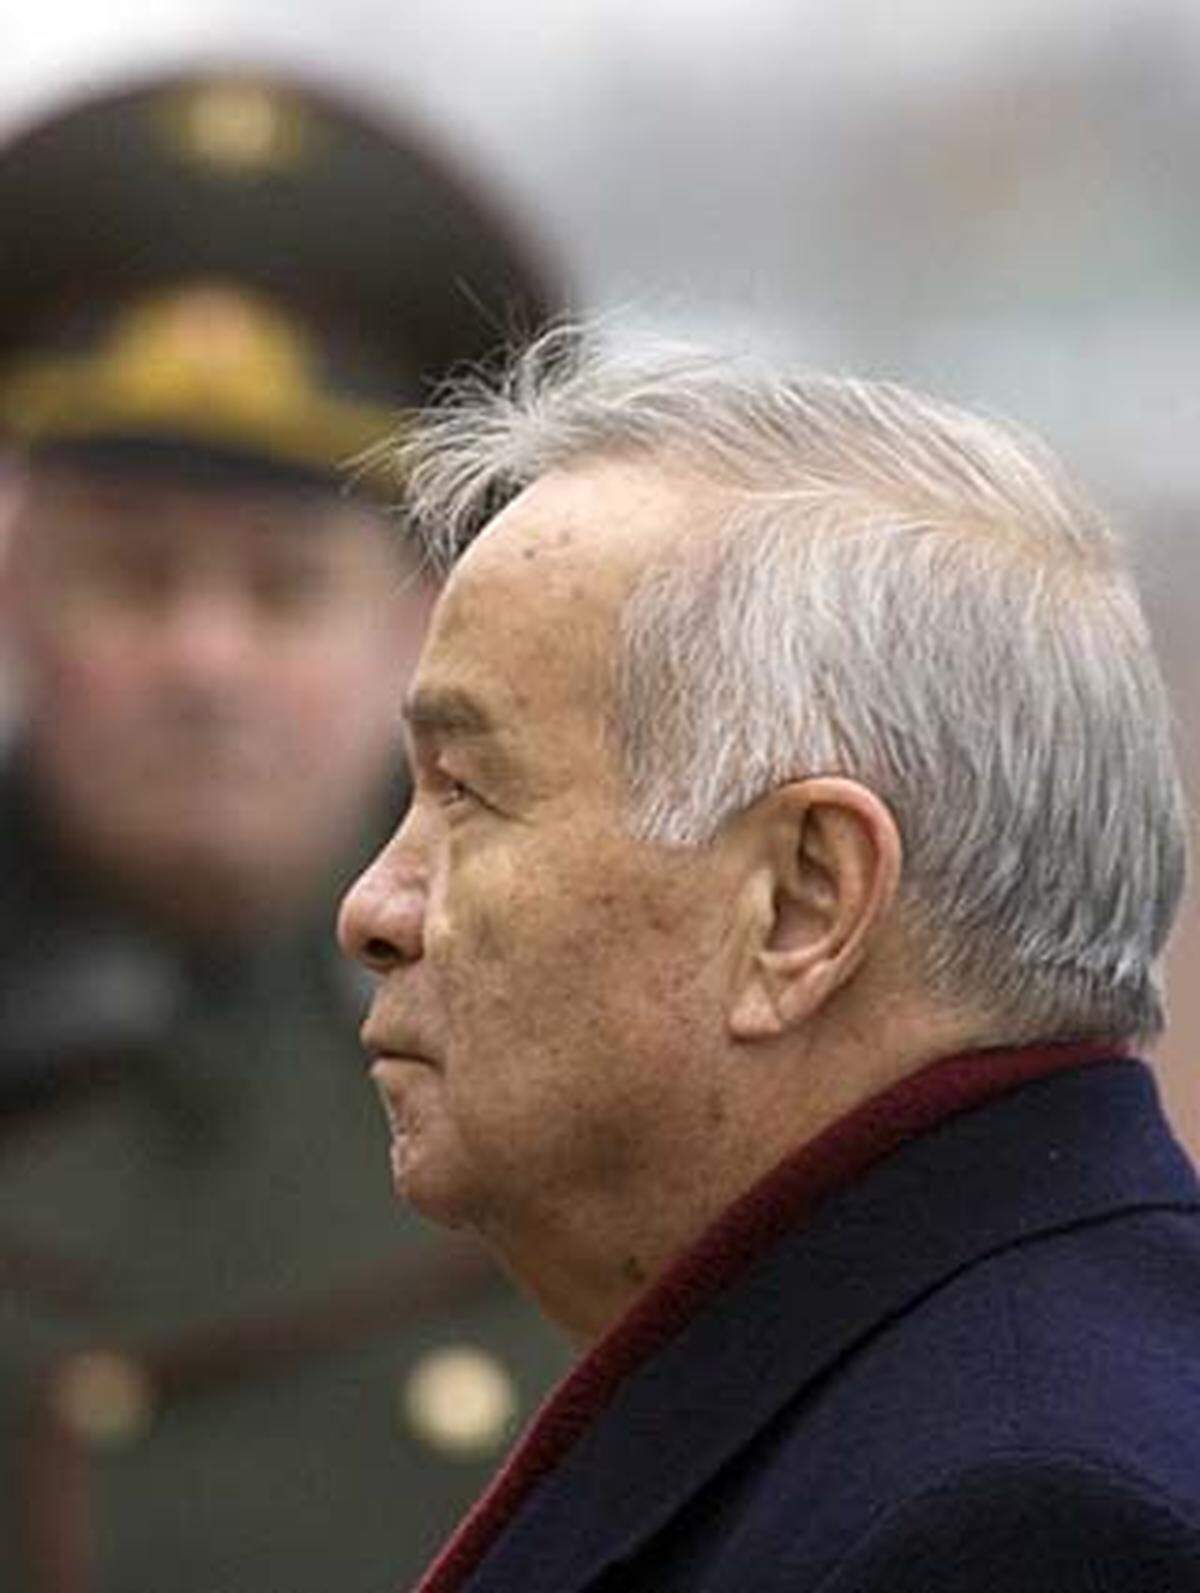 Seine Titel als "Held Usbekistans" und "Mann des Jahrtausends" lassen schon auf den Führerkult schließen, der mittlerweile groteske Züge angenommen hat. Ein Gesetz aus dem Jahr 2003 macht Karimov und seine gesamte Familie immun für jegliche strafrechtliche Verfolgung. Anscheinend soll Karimovs älteste Tochter auf eine spätere Machtübernahme vorbereitet werden.  Menschenrechtsverletzungen fanden bis zum Jahr 2005 eher im Geheimen statt - bis es am 13. Mai des Jahres zu einem Massaker kam, das internationale Empörung auf sich zog: 500 Menschen wurden bei einer Demonstration von der Armee erschossen.